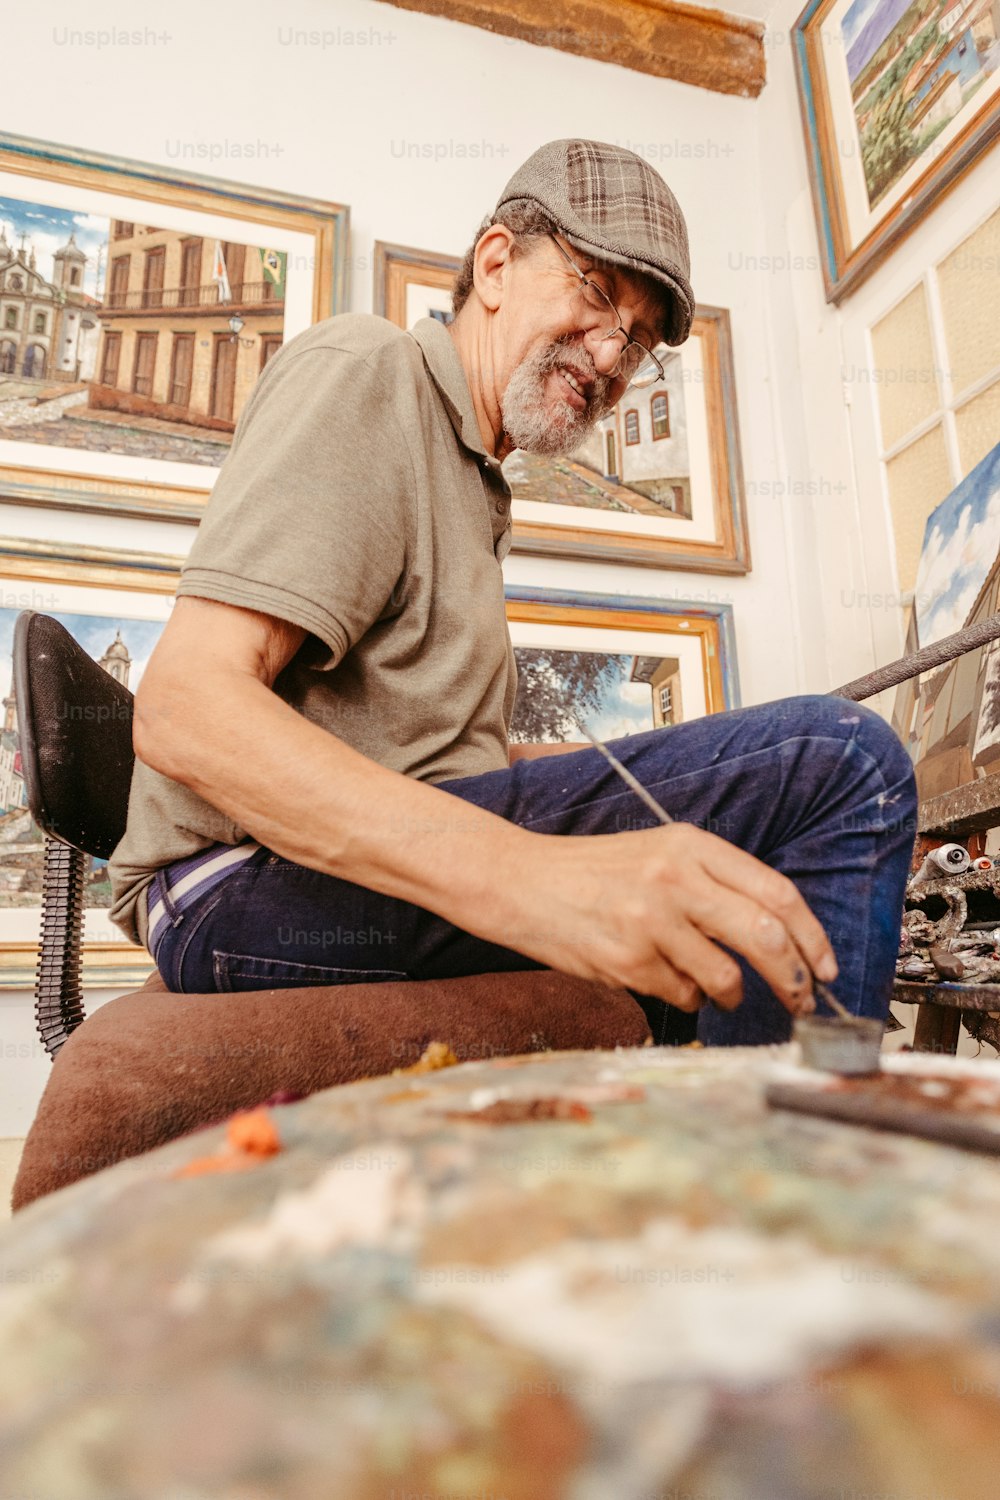 Un uomo seduto su una sedia che lavora su un'opera d'arte